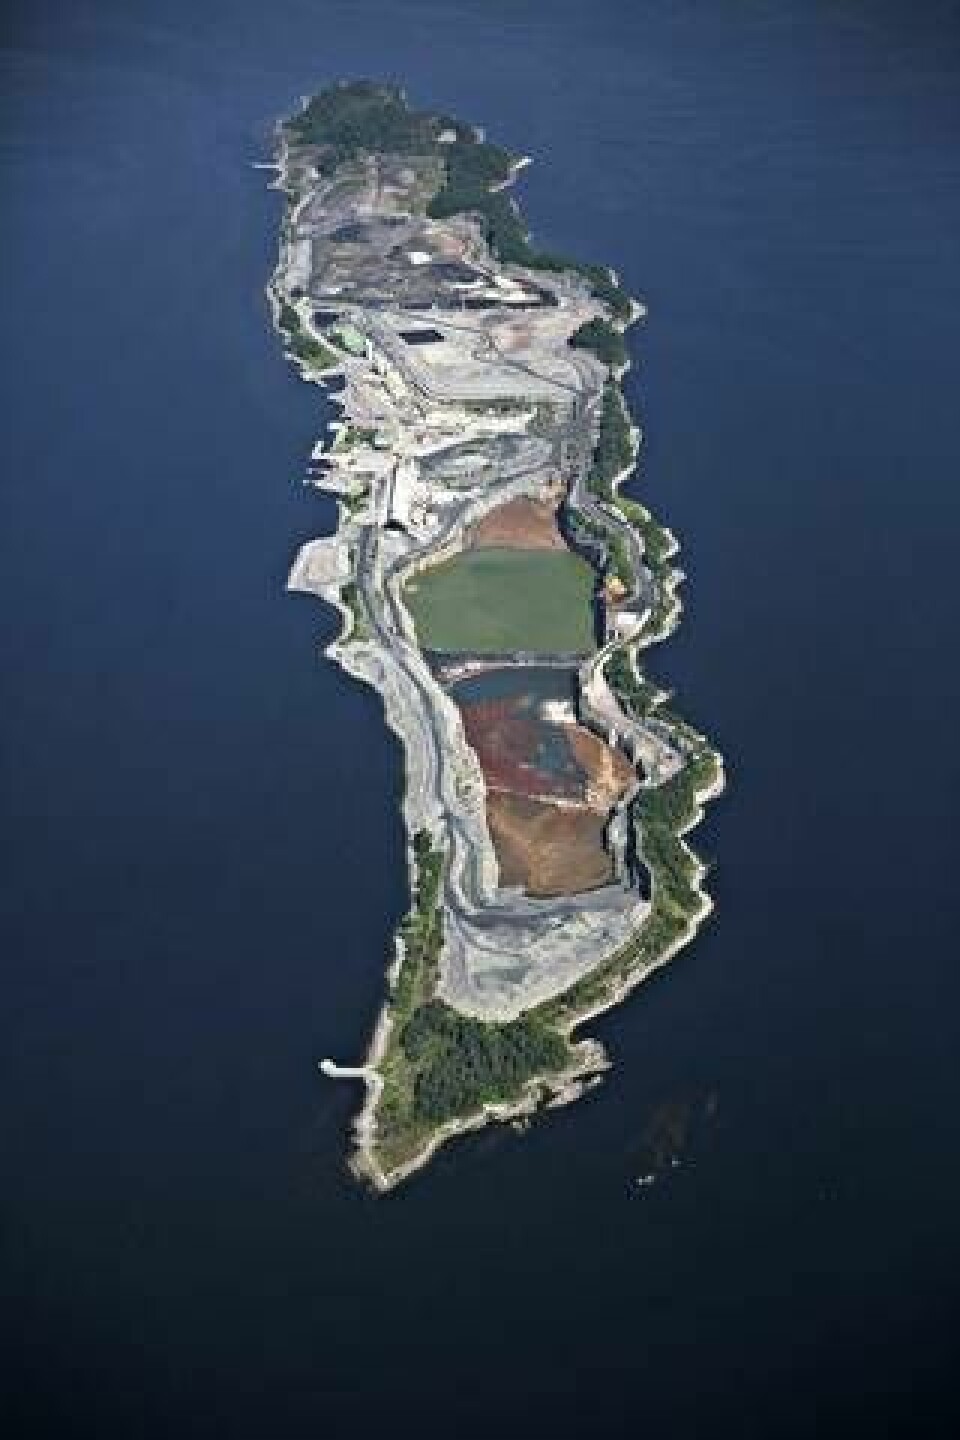 Ön Langöya i Oslofjorden, där miljöfarligt avfall som flygaska tas emot och deponeras i en före detta kalkgruva. Här hamnar en stor del av flygaskan från avfallsförbränning i Norge och Sverige. Foto: Noah AS